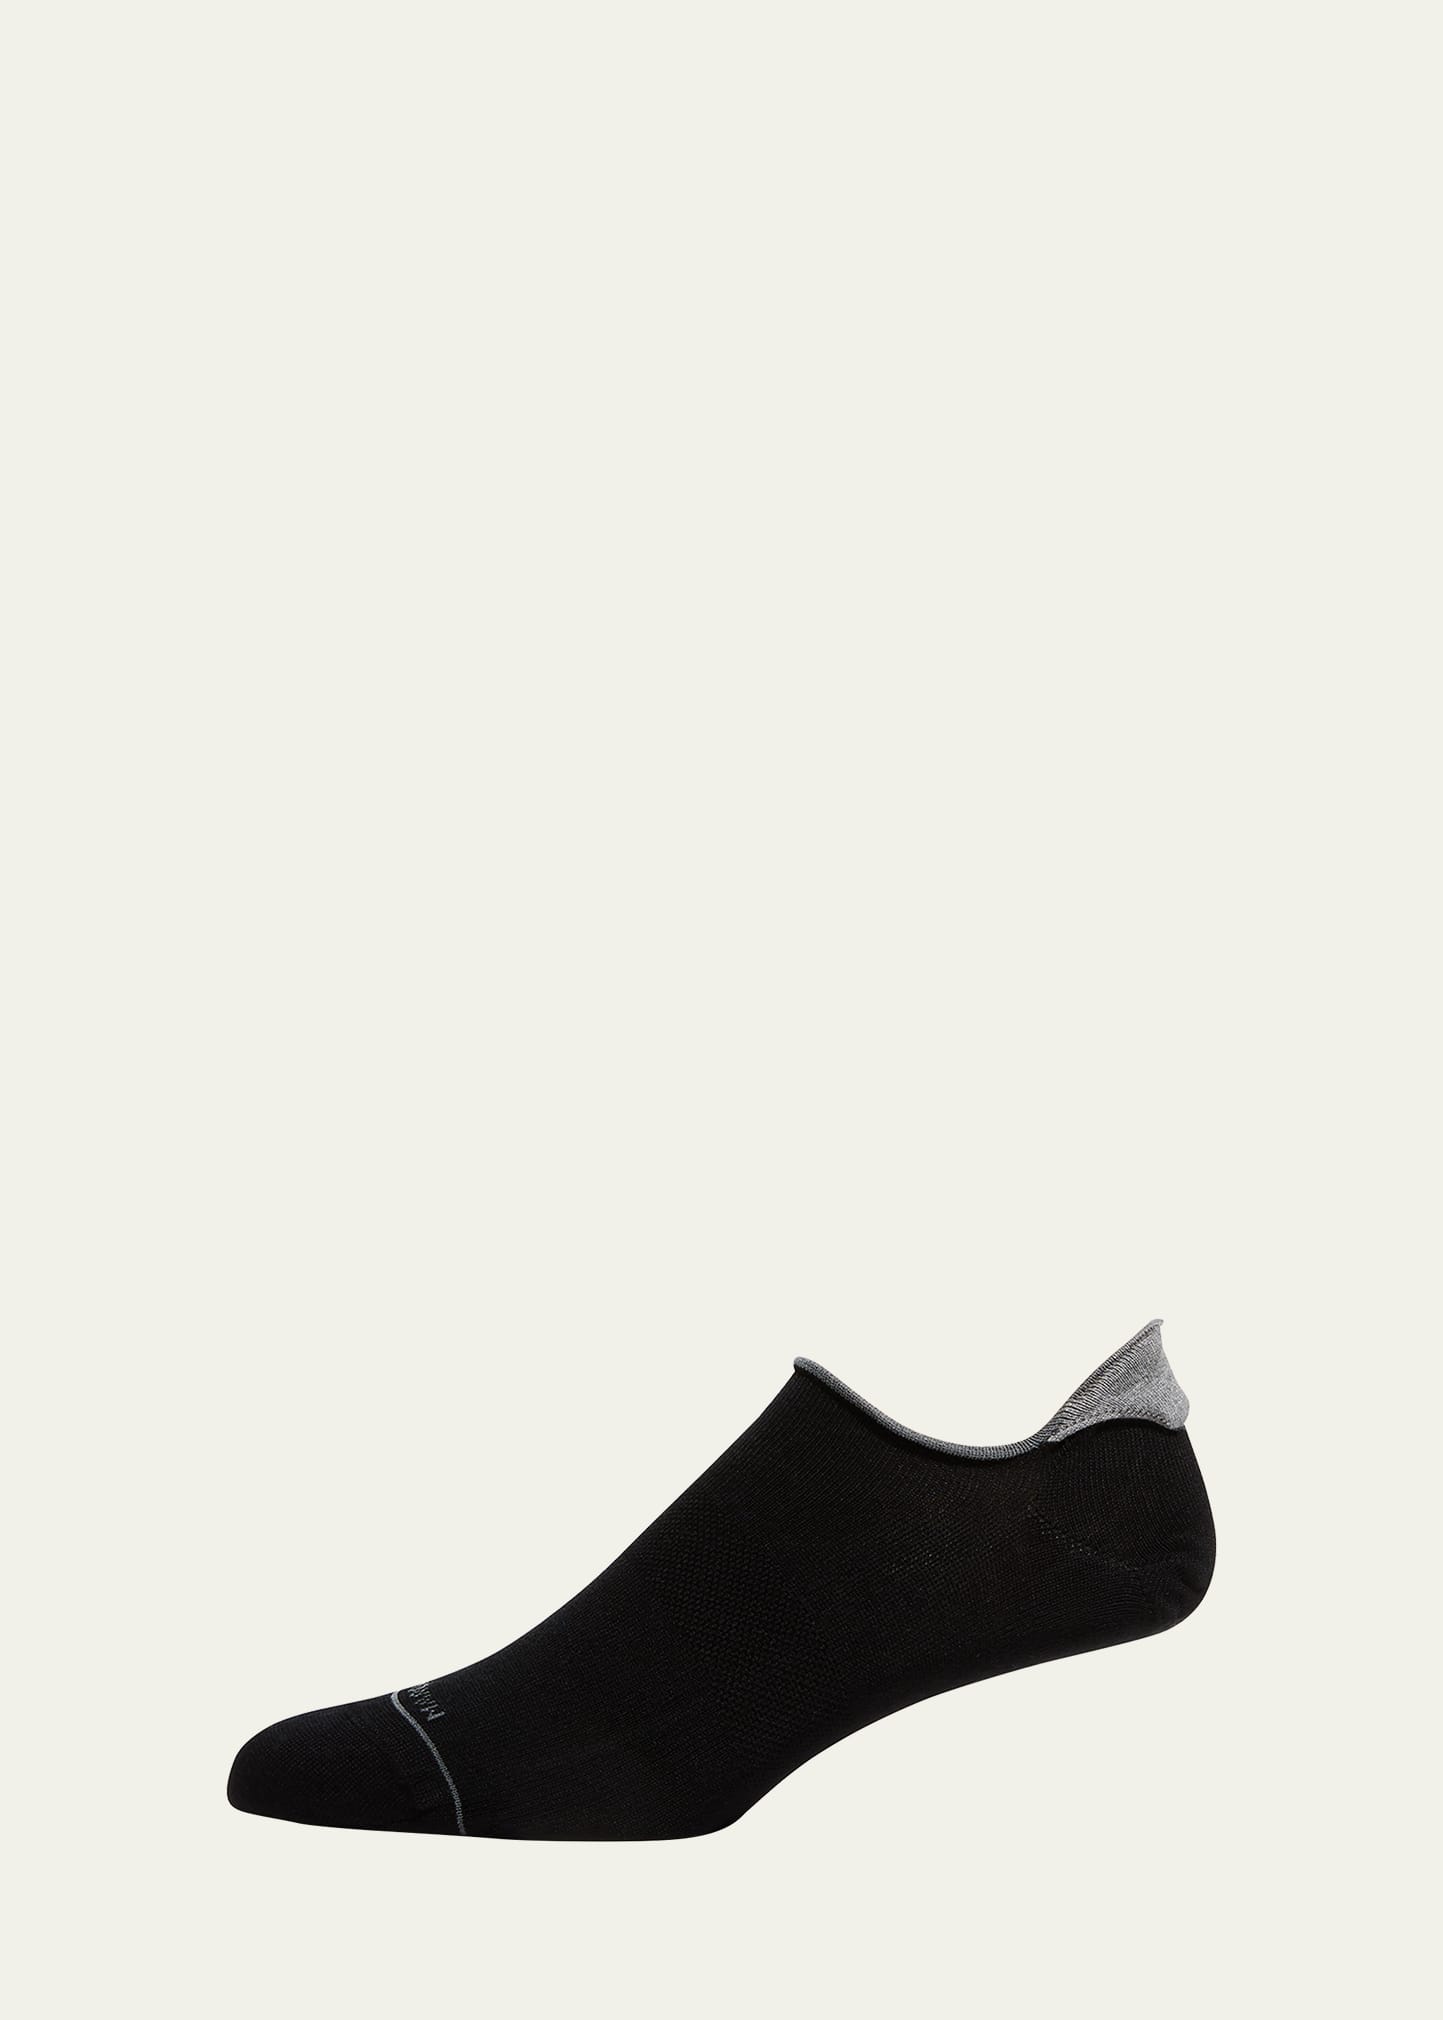 Marcoliani Men's No-show Sneaker Socks In Black Pattern